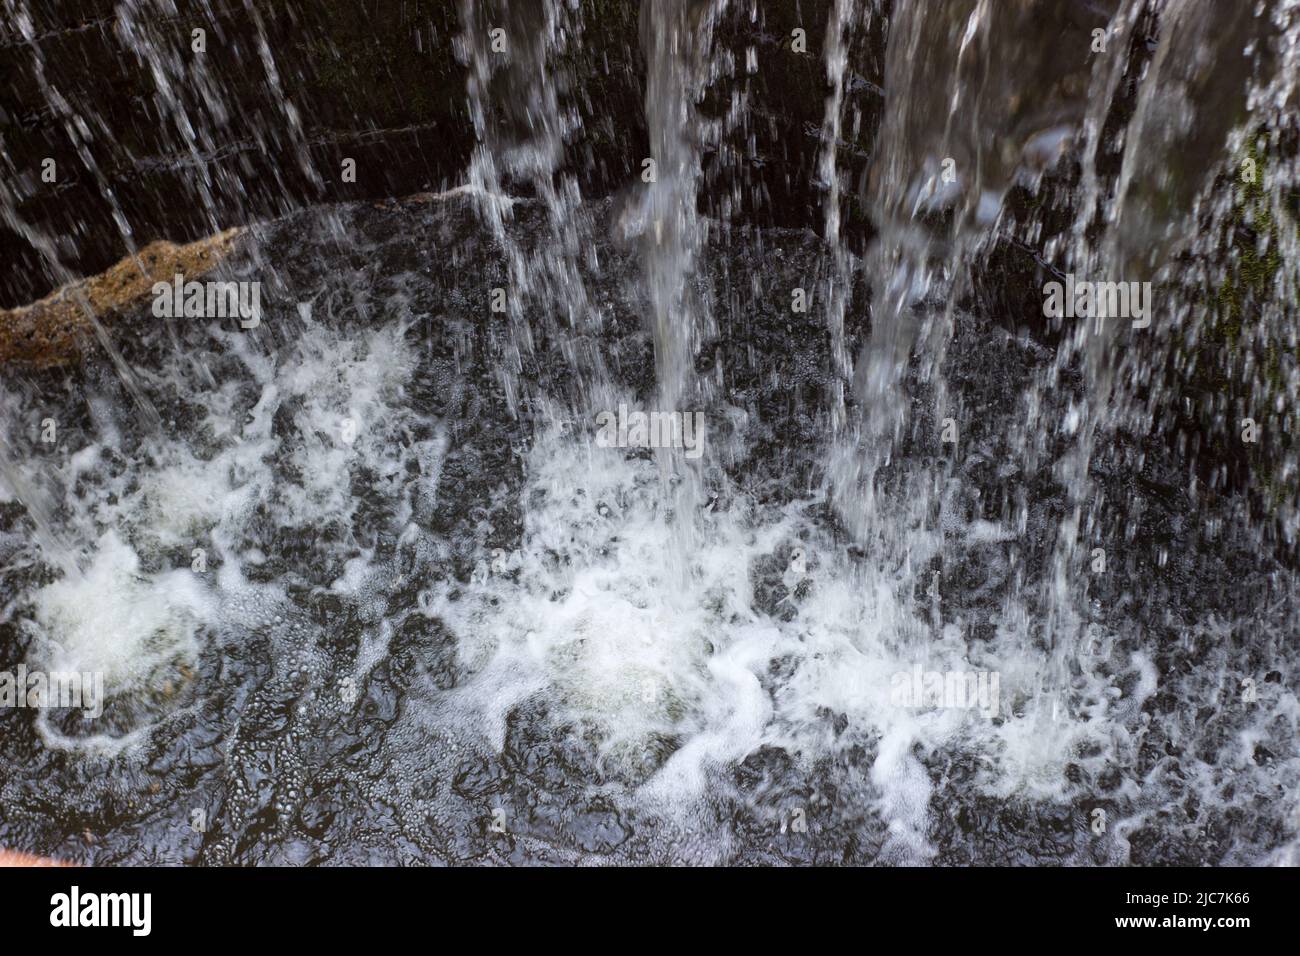 Dettaglio dell'acqua che cade nella fontana Foto Stock